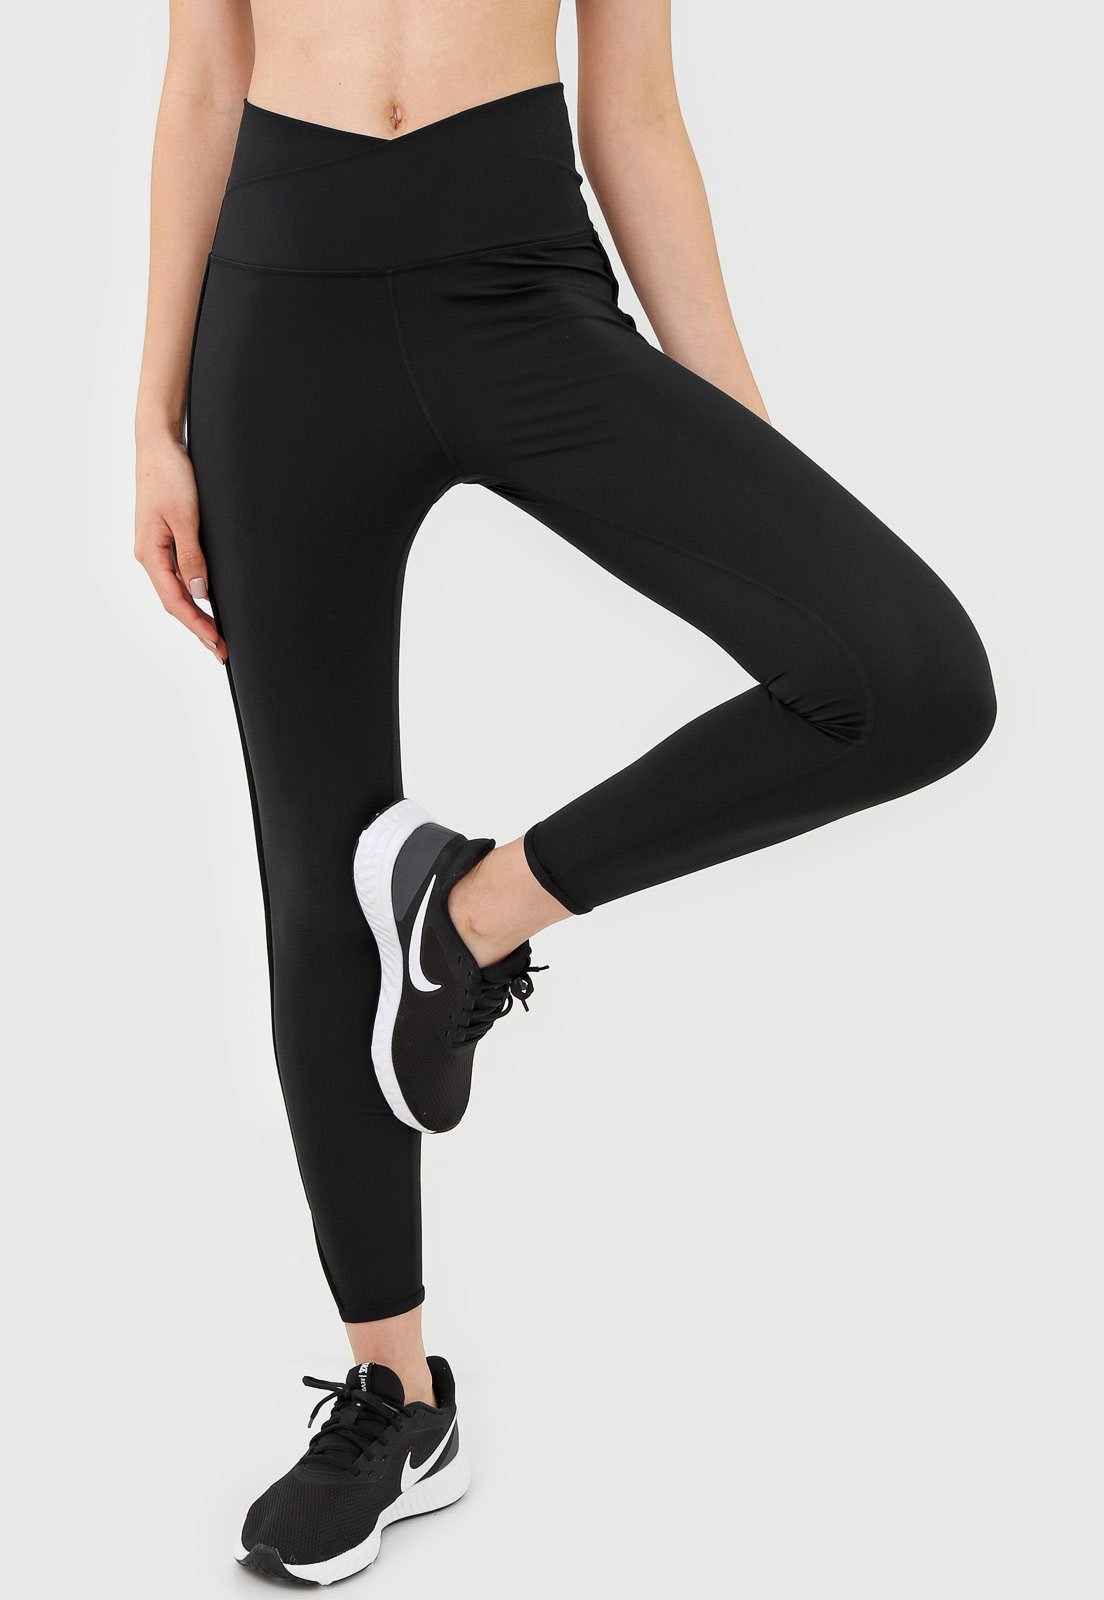 Legging Nike Yoga Core Cln Preta - Compre Agora